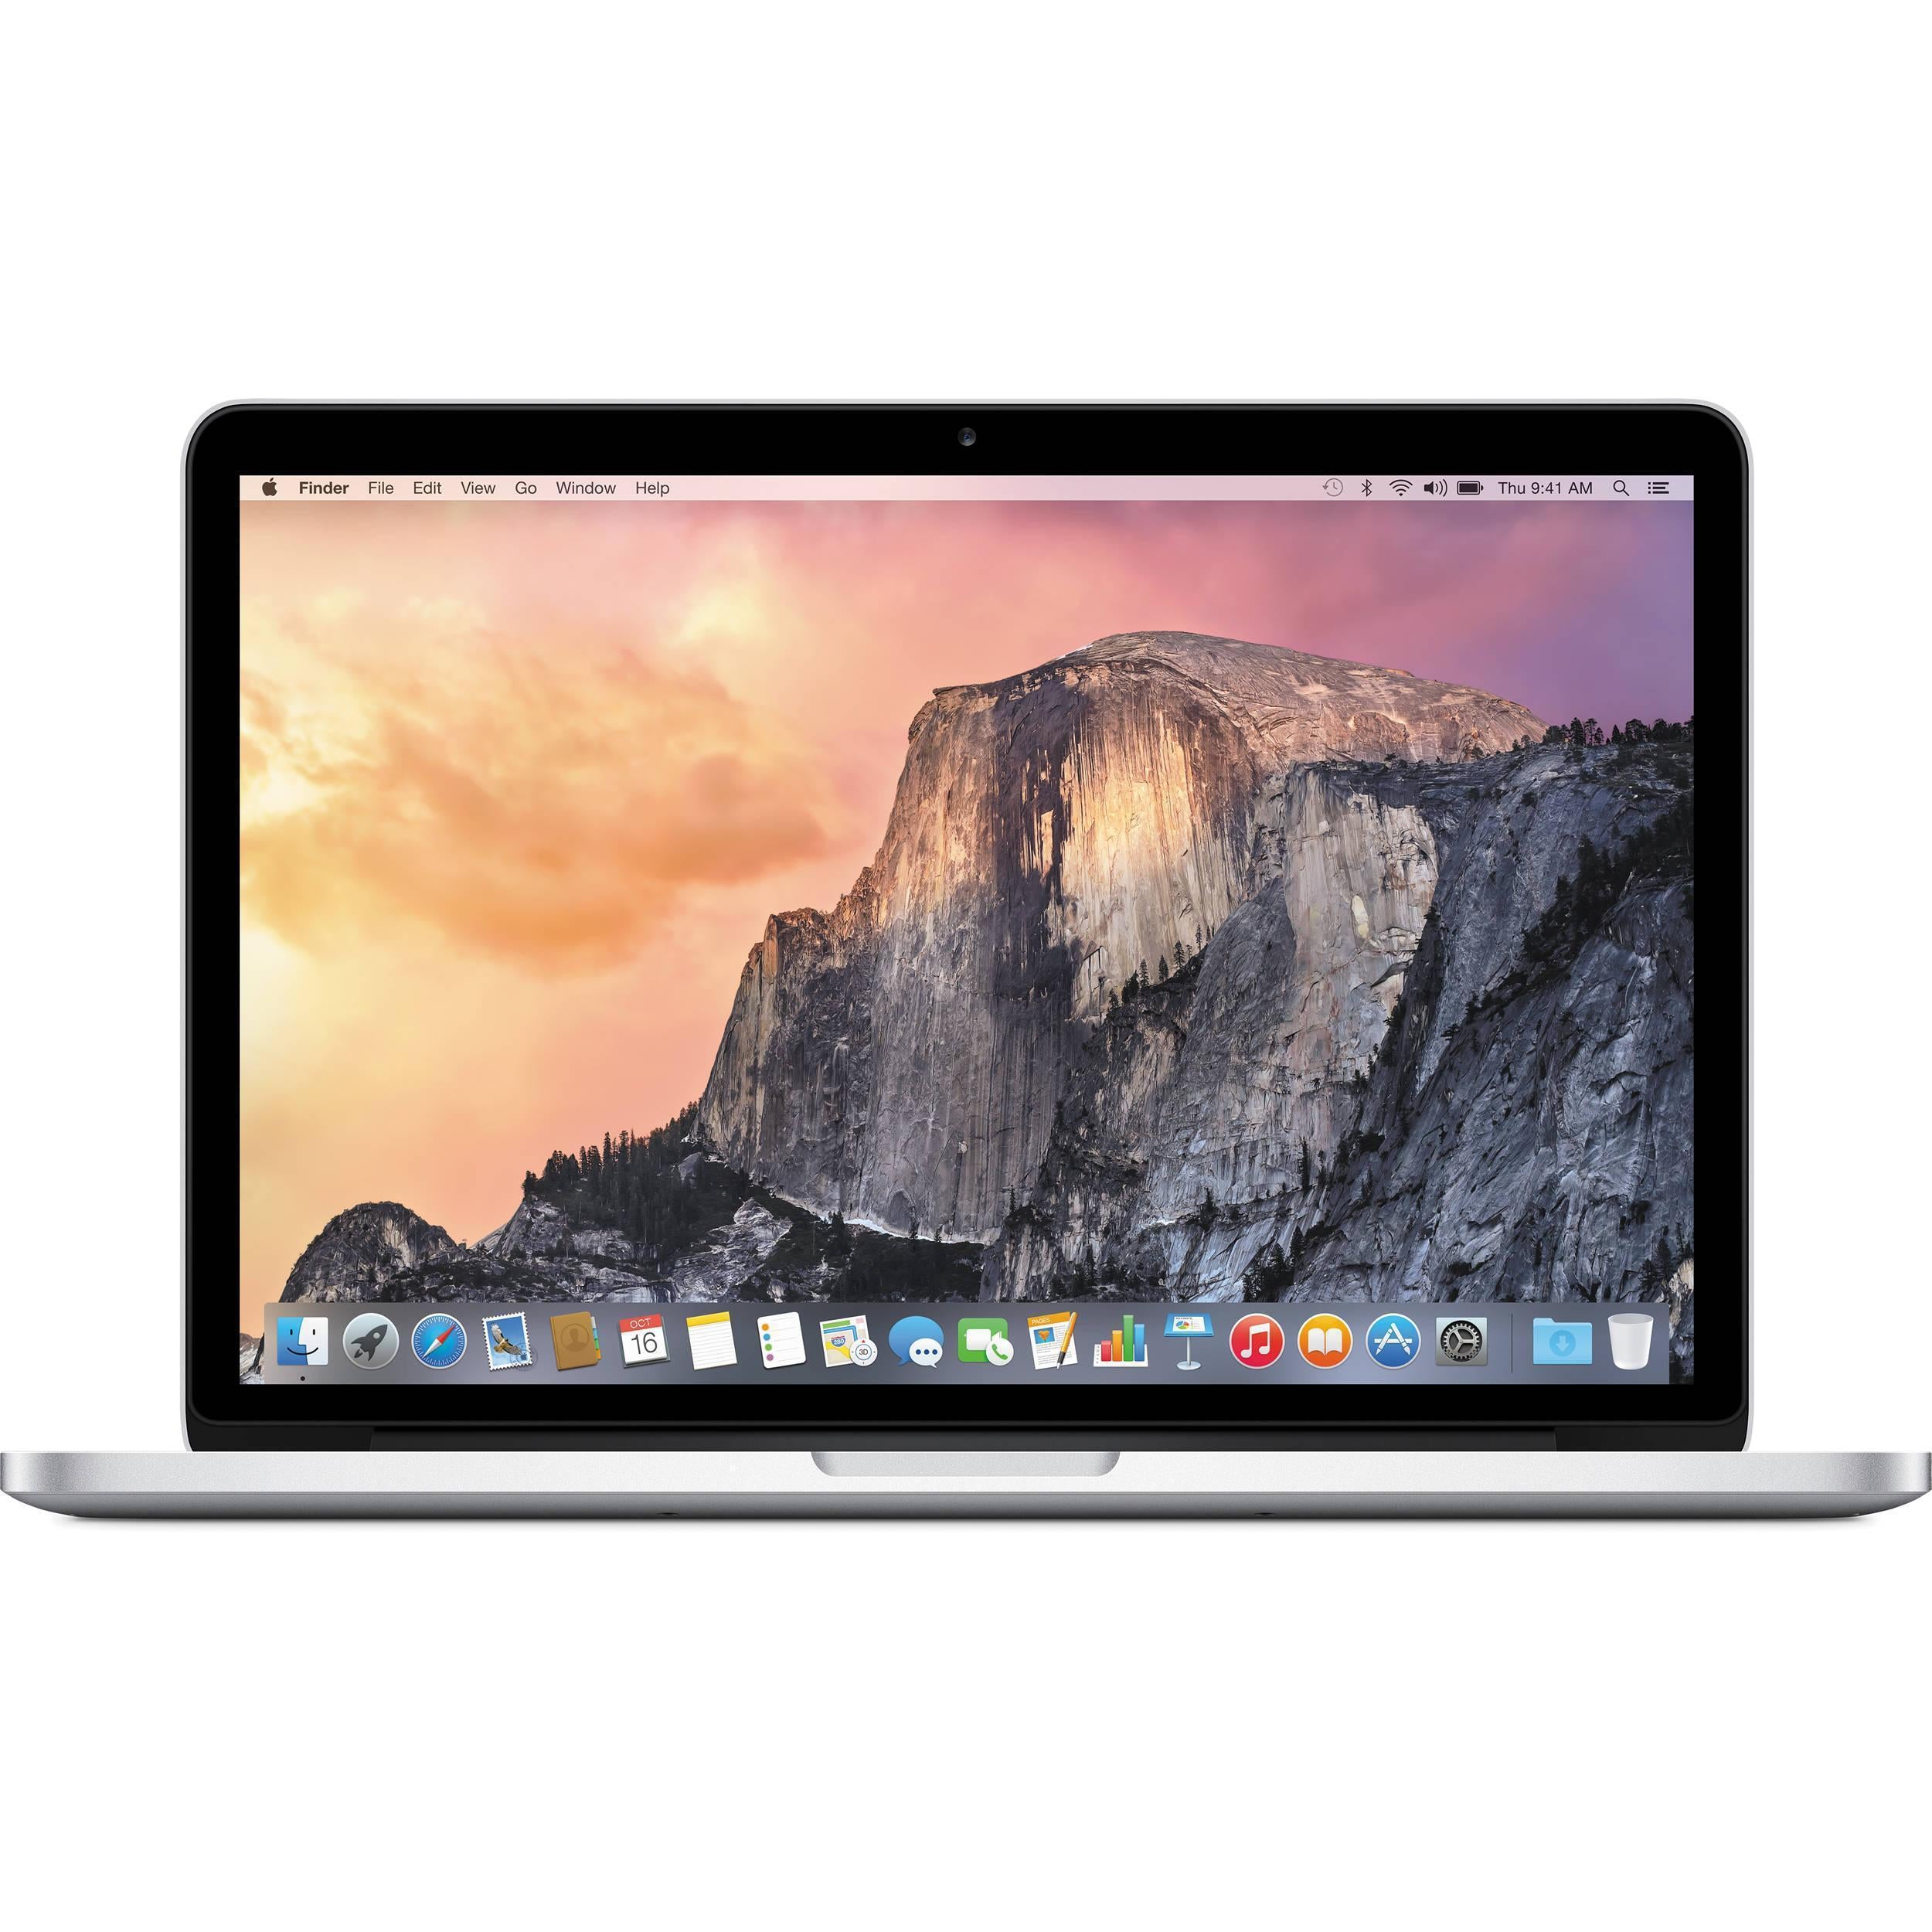 MacBook Pro 13" (Início de 2013) - Recondicionado